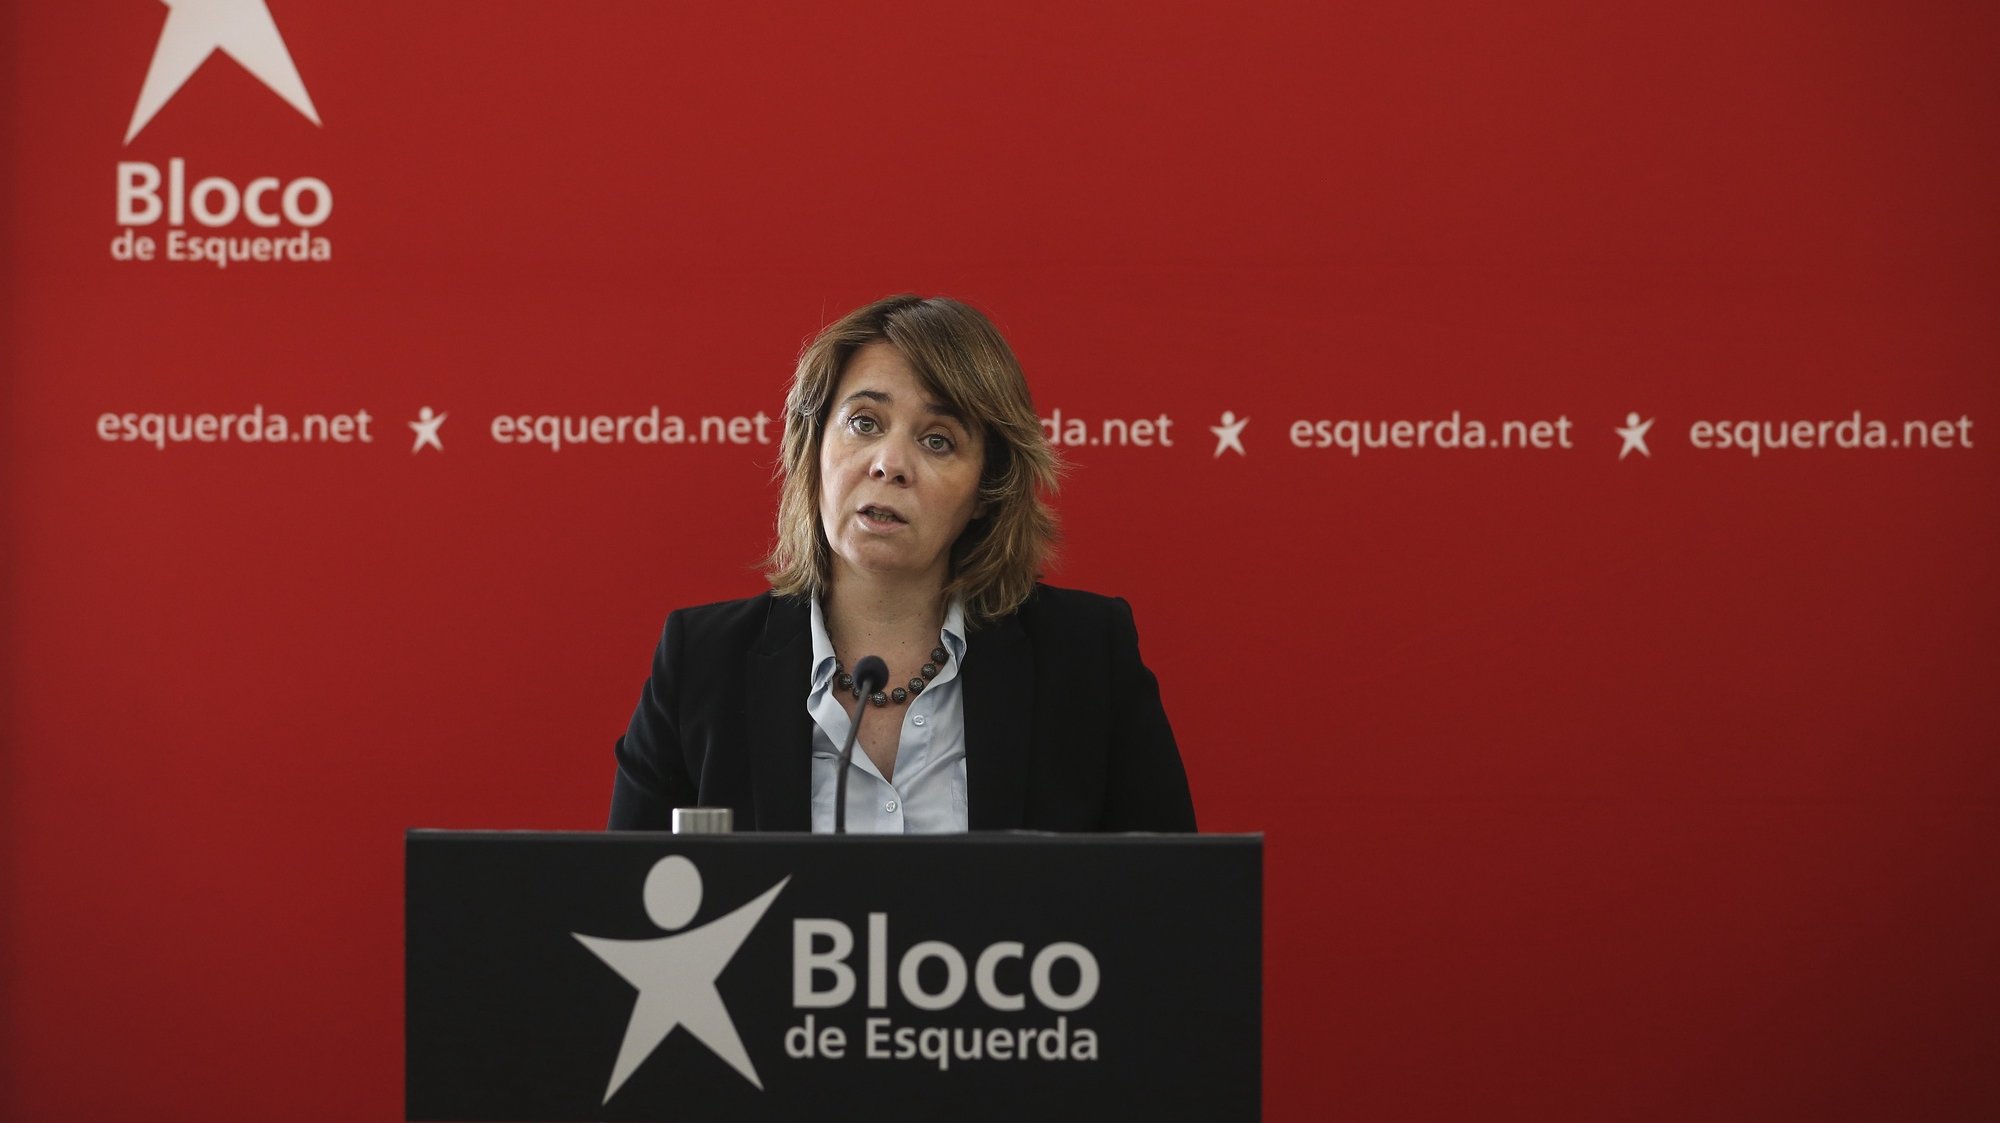 A coordenadora do Bloco de Esquerda (BE), Catarina Martins, discursa durante uma conferência de imprensa de iniciativa legislativa do Bloco de Esquerda que visa o alargamento do âmbito e abrangência da testagem nacional à covid-19, na sede do partido em Lisboa, 26 de março de 2021. RODRIGO ANTUNES/LUSA